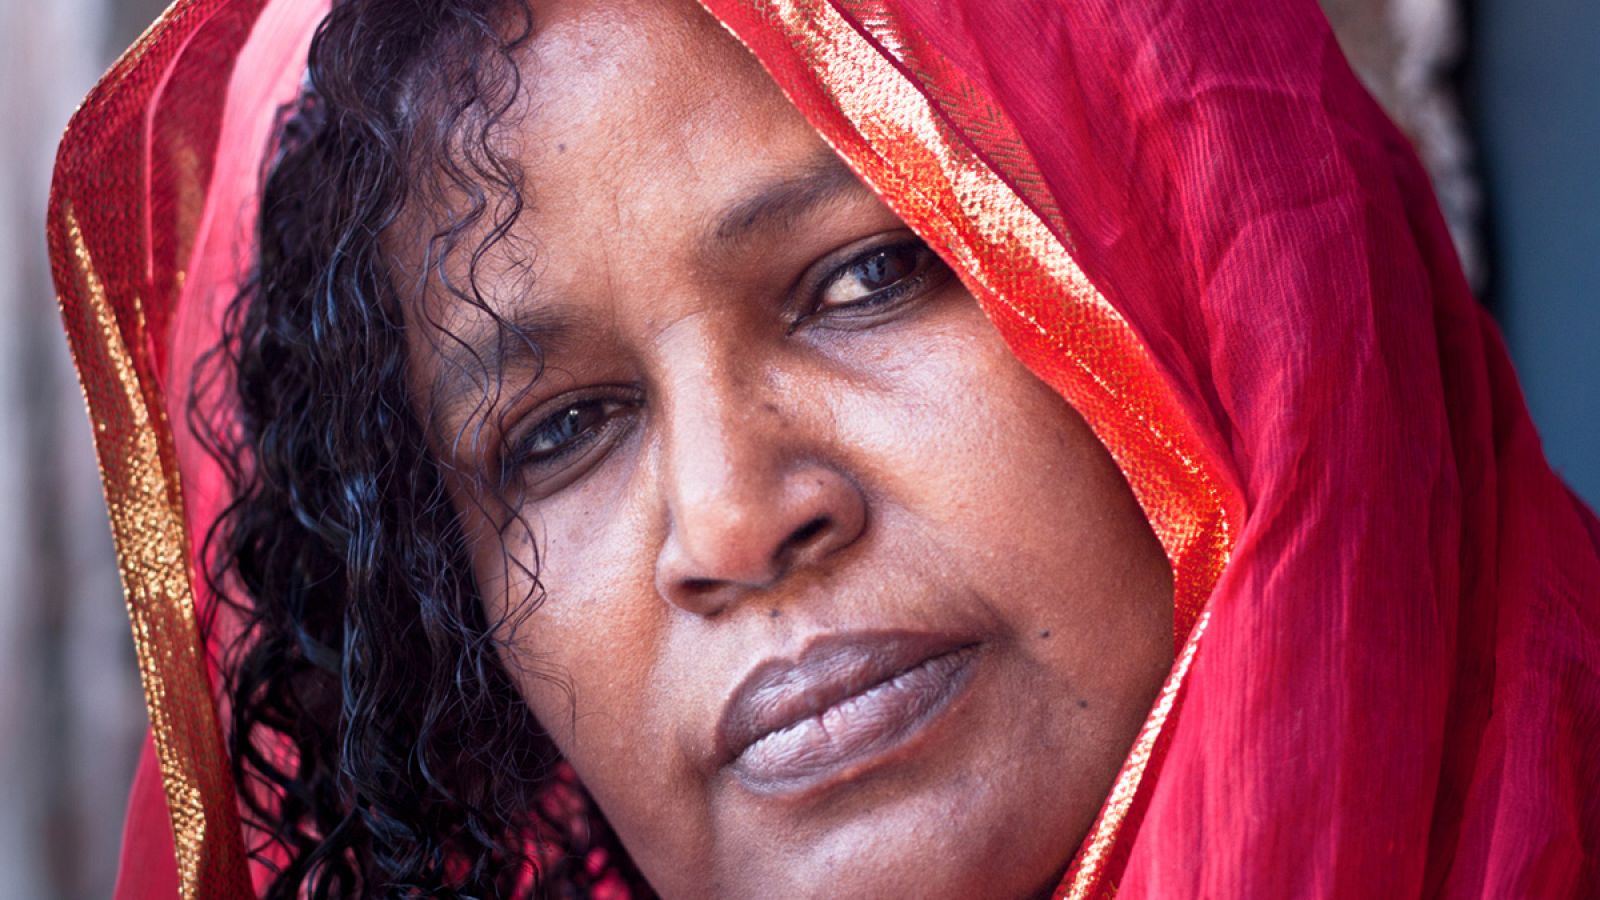 El rostro de la activista contra la ablación Ashia Ismail forma parte del libro 'Mujer, todos somos una'